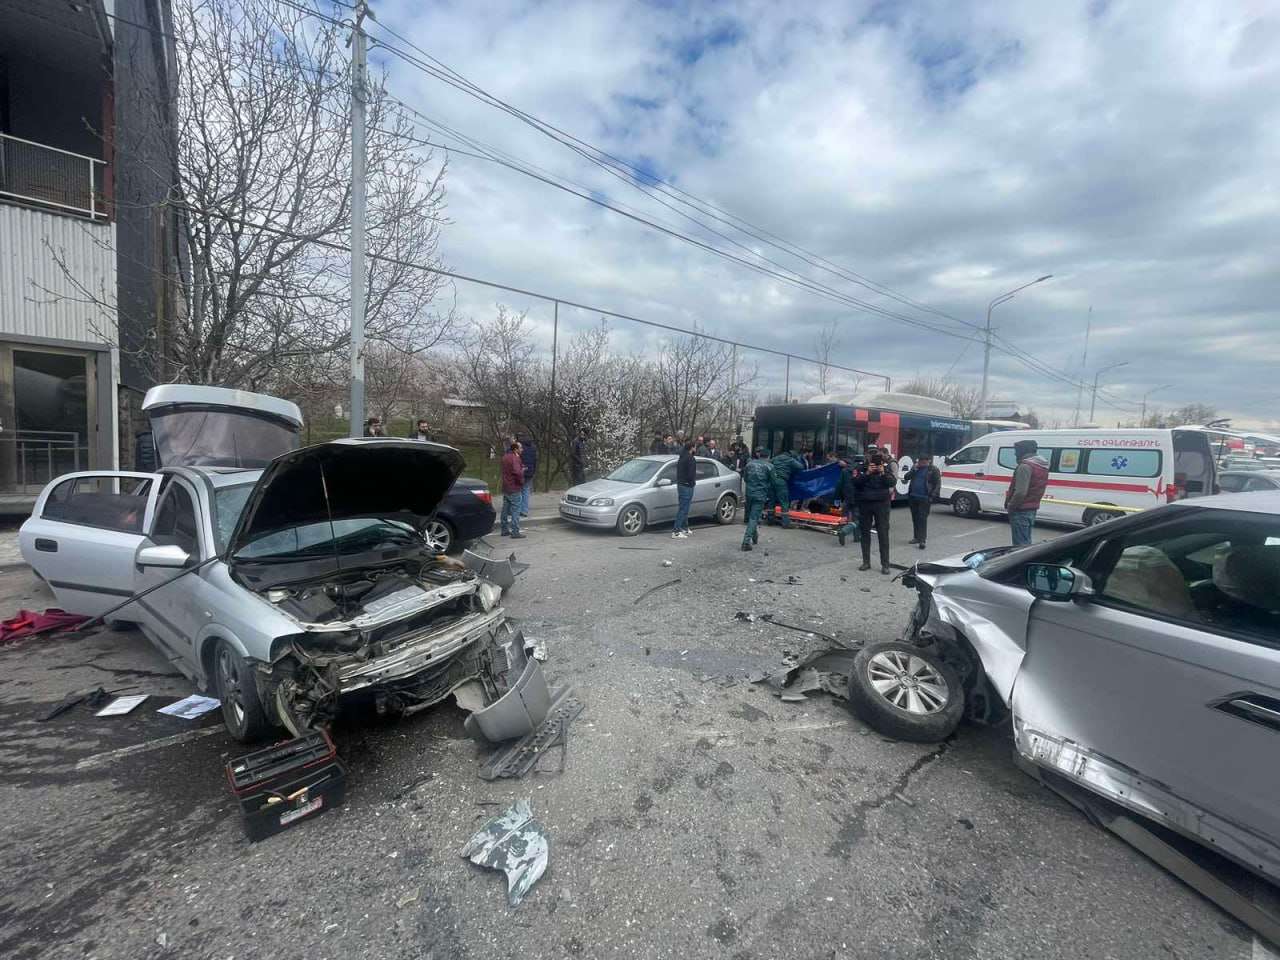 Խոշոր վթար՝ Թբիլիսյան խճուղում. բախվել է երեք մեքենա